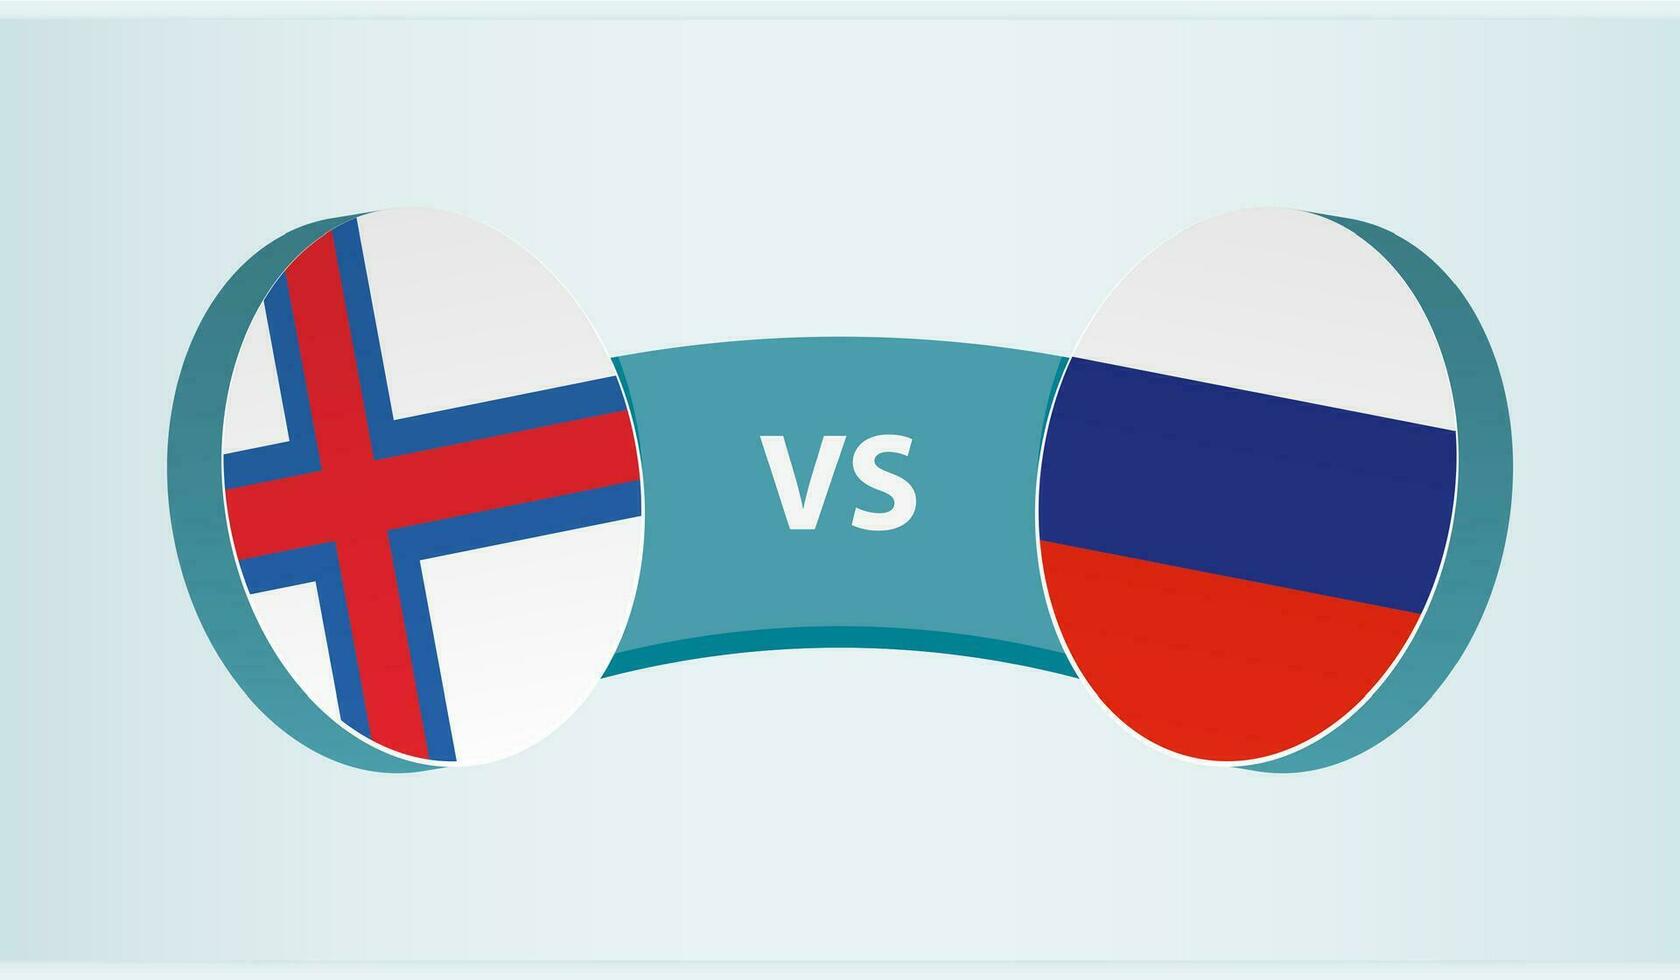 faroe öar mot Ryssland, team sporter konkurrens begrepp. vektor